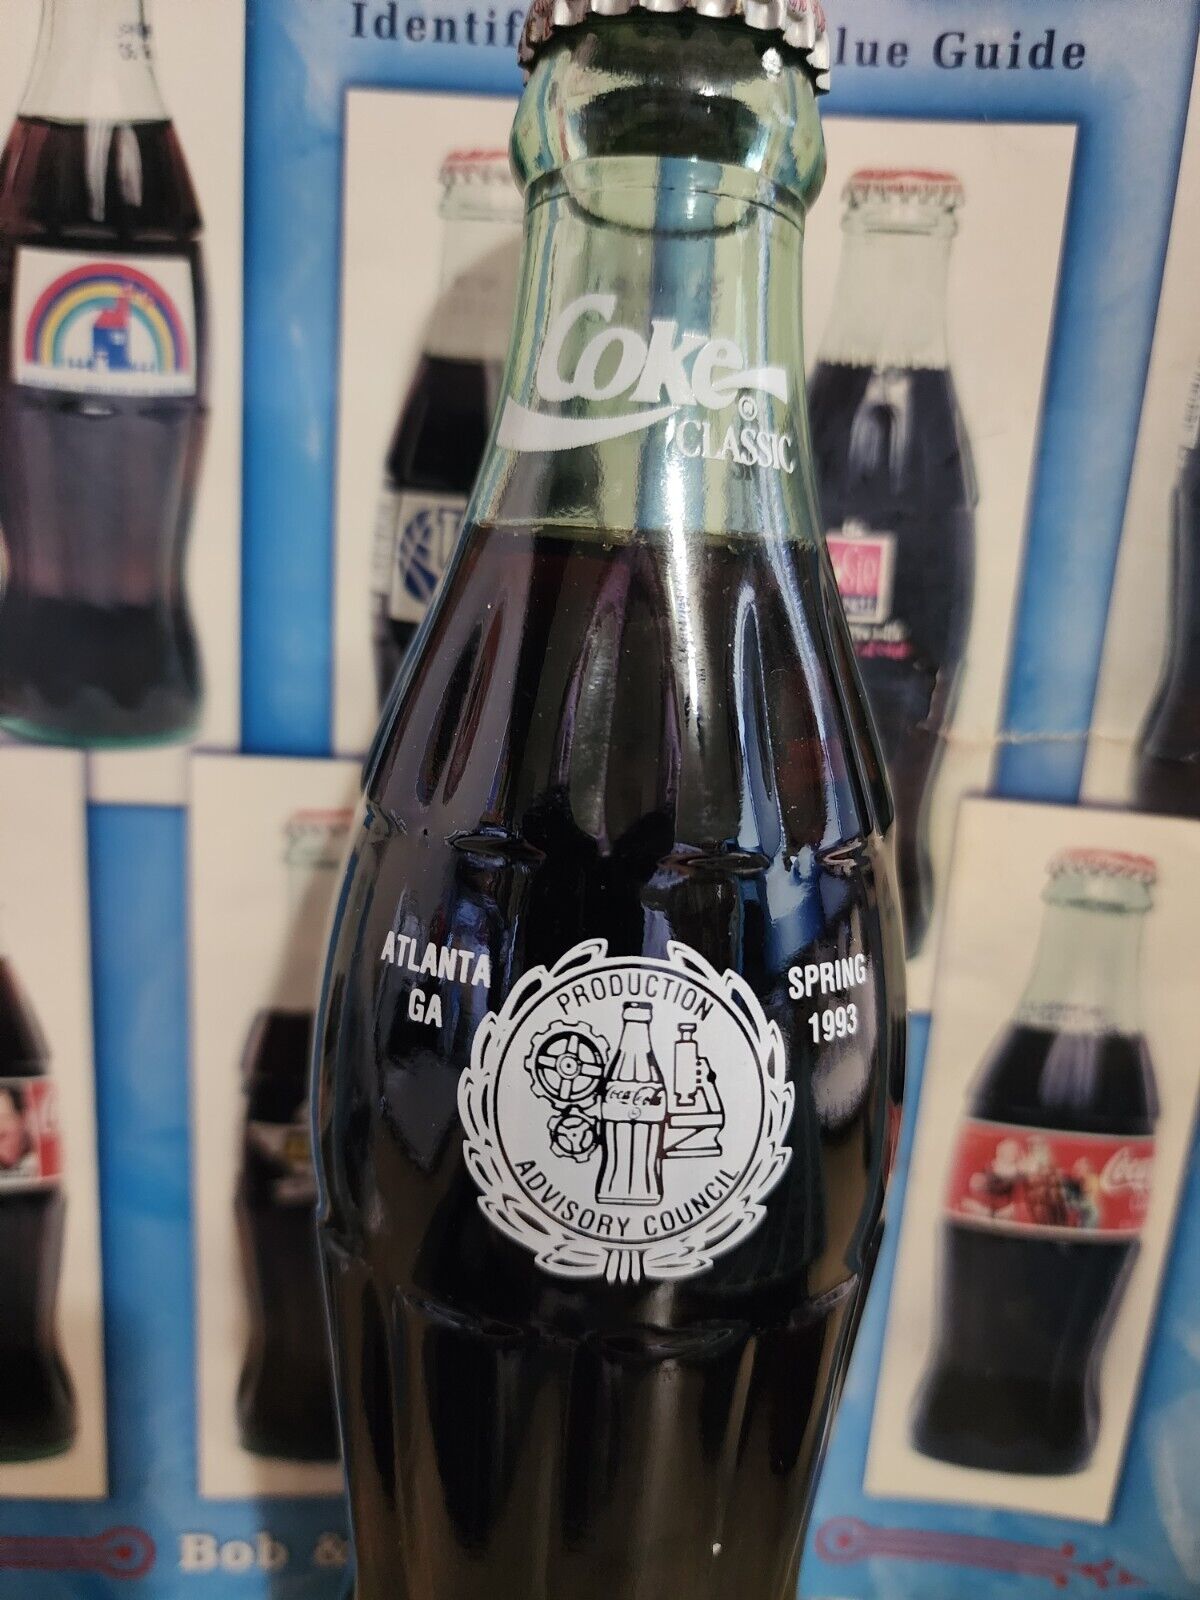  Coca-cola Production Advisory Council-Atlanta, Georgia  1993 coke bottle